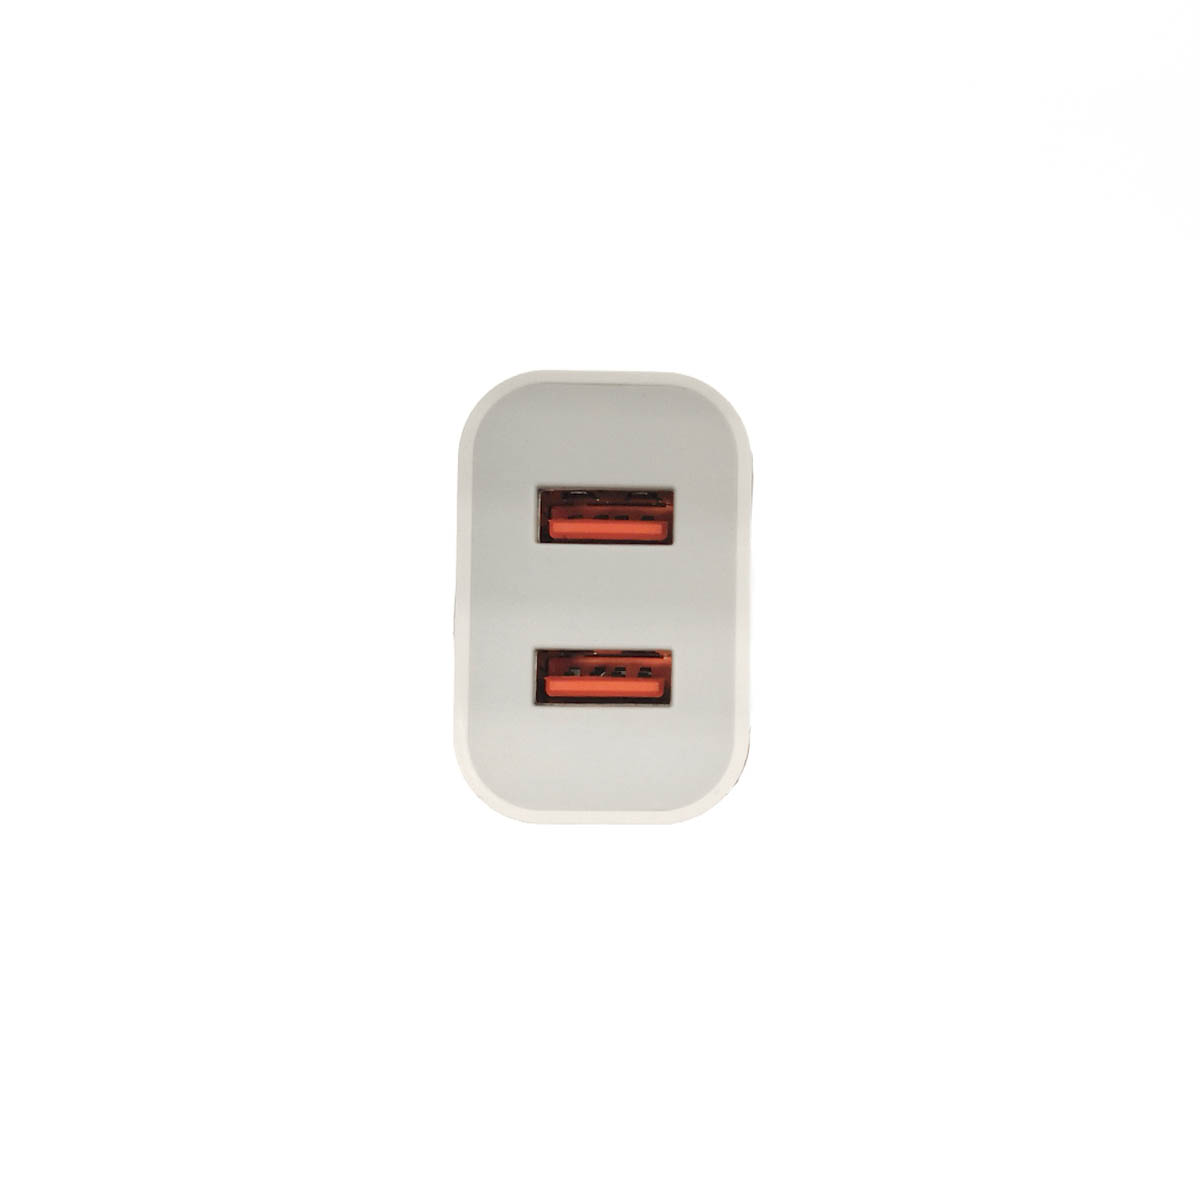 СЗУ (Сетевое зарядное устройство) DENMEN DC05, 2.4A, 2 USB, цвет белый